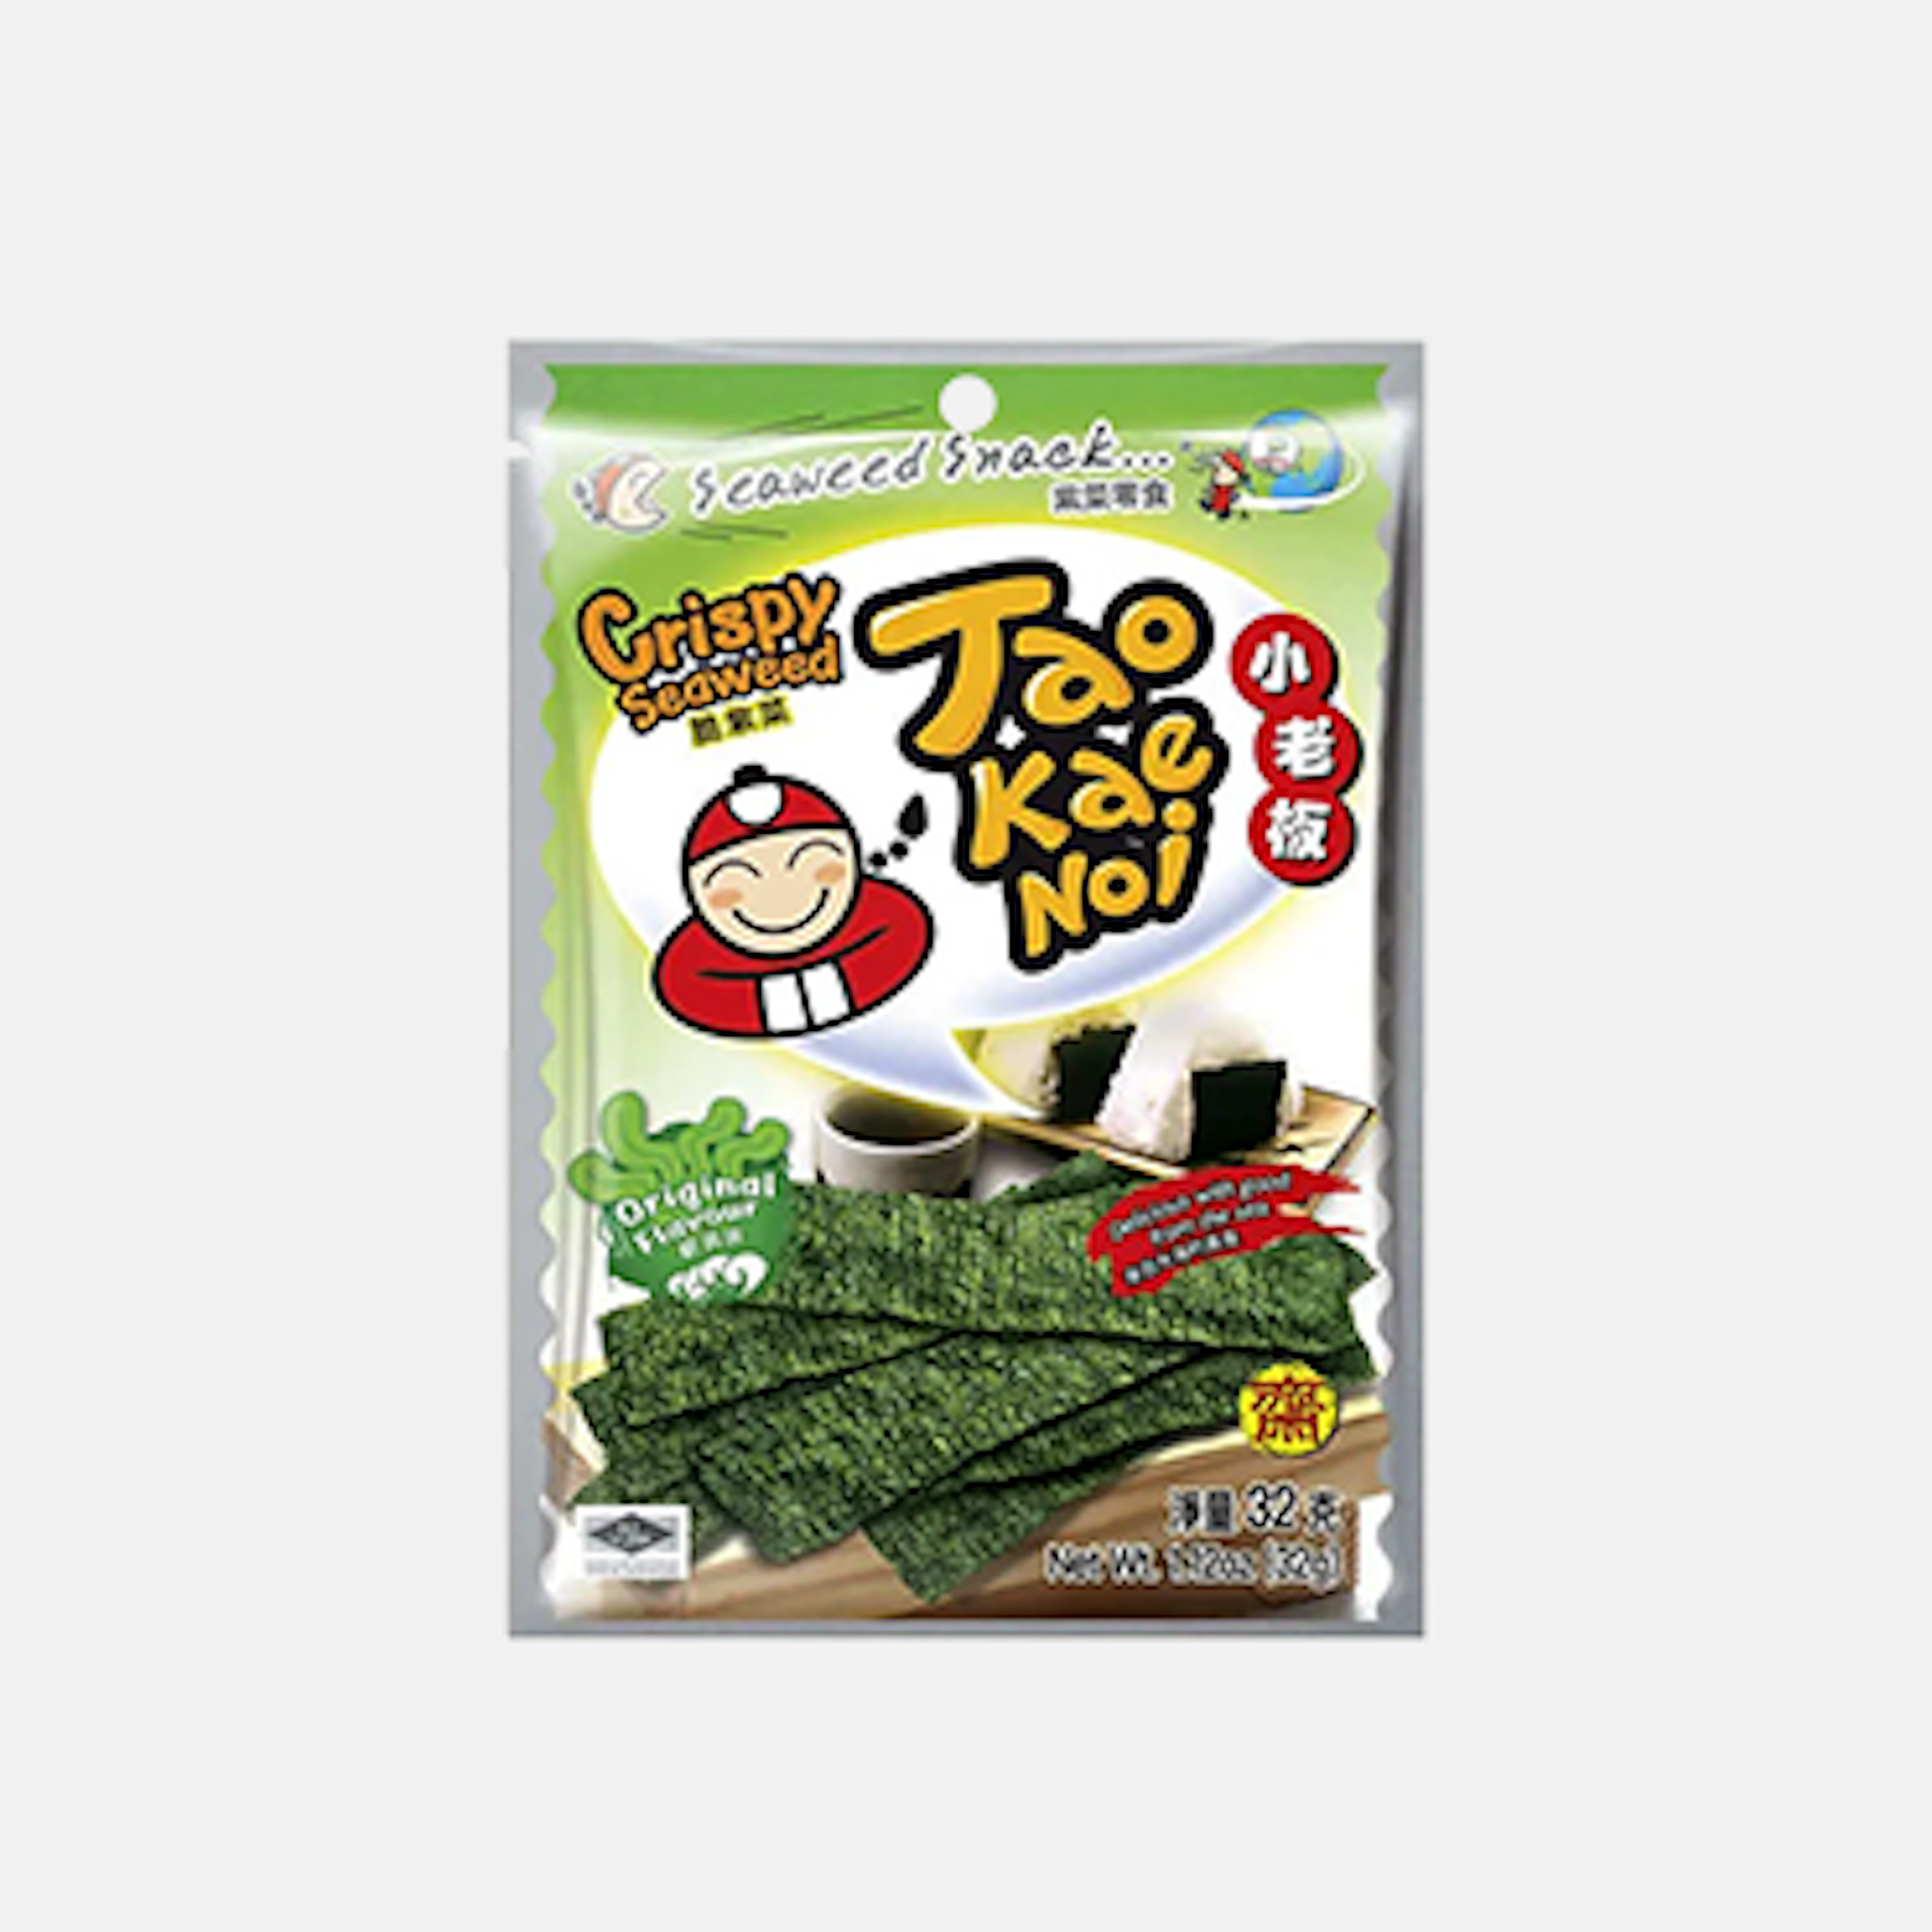 Bild der Verpackung von TAOKAENOI Crispy Seaweed Original.